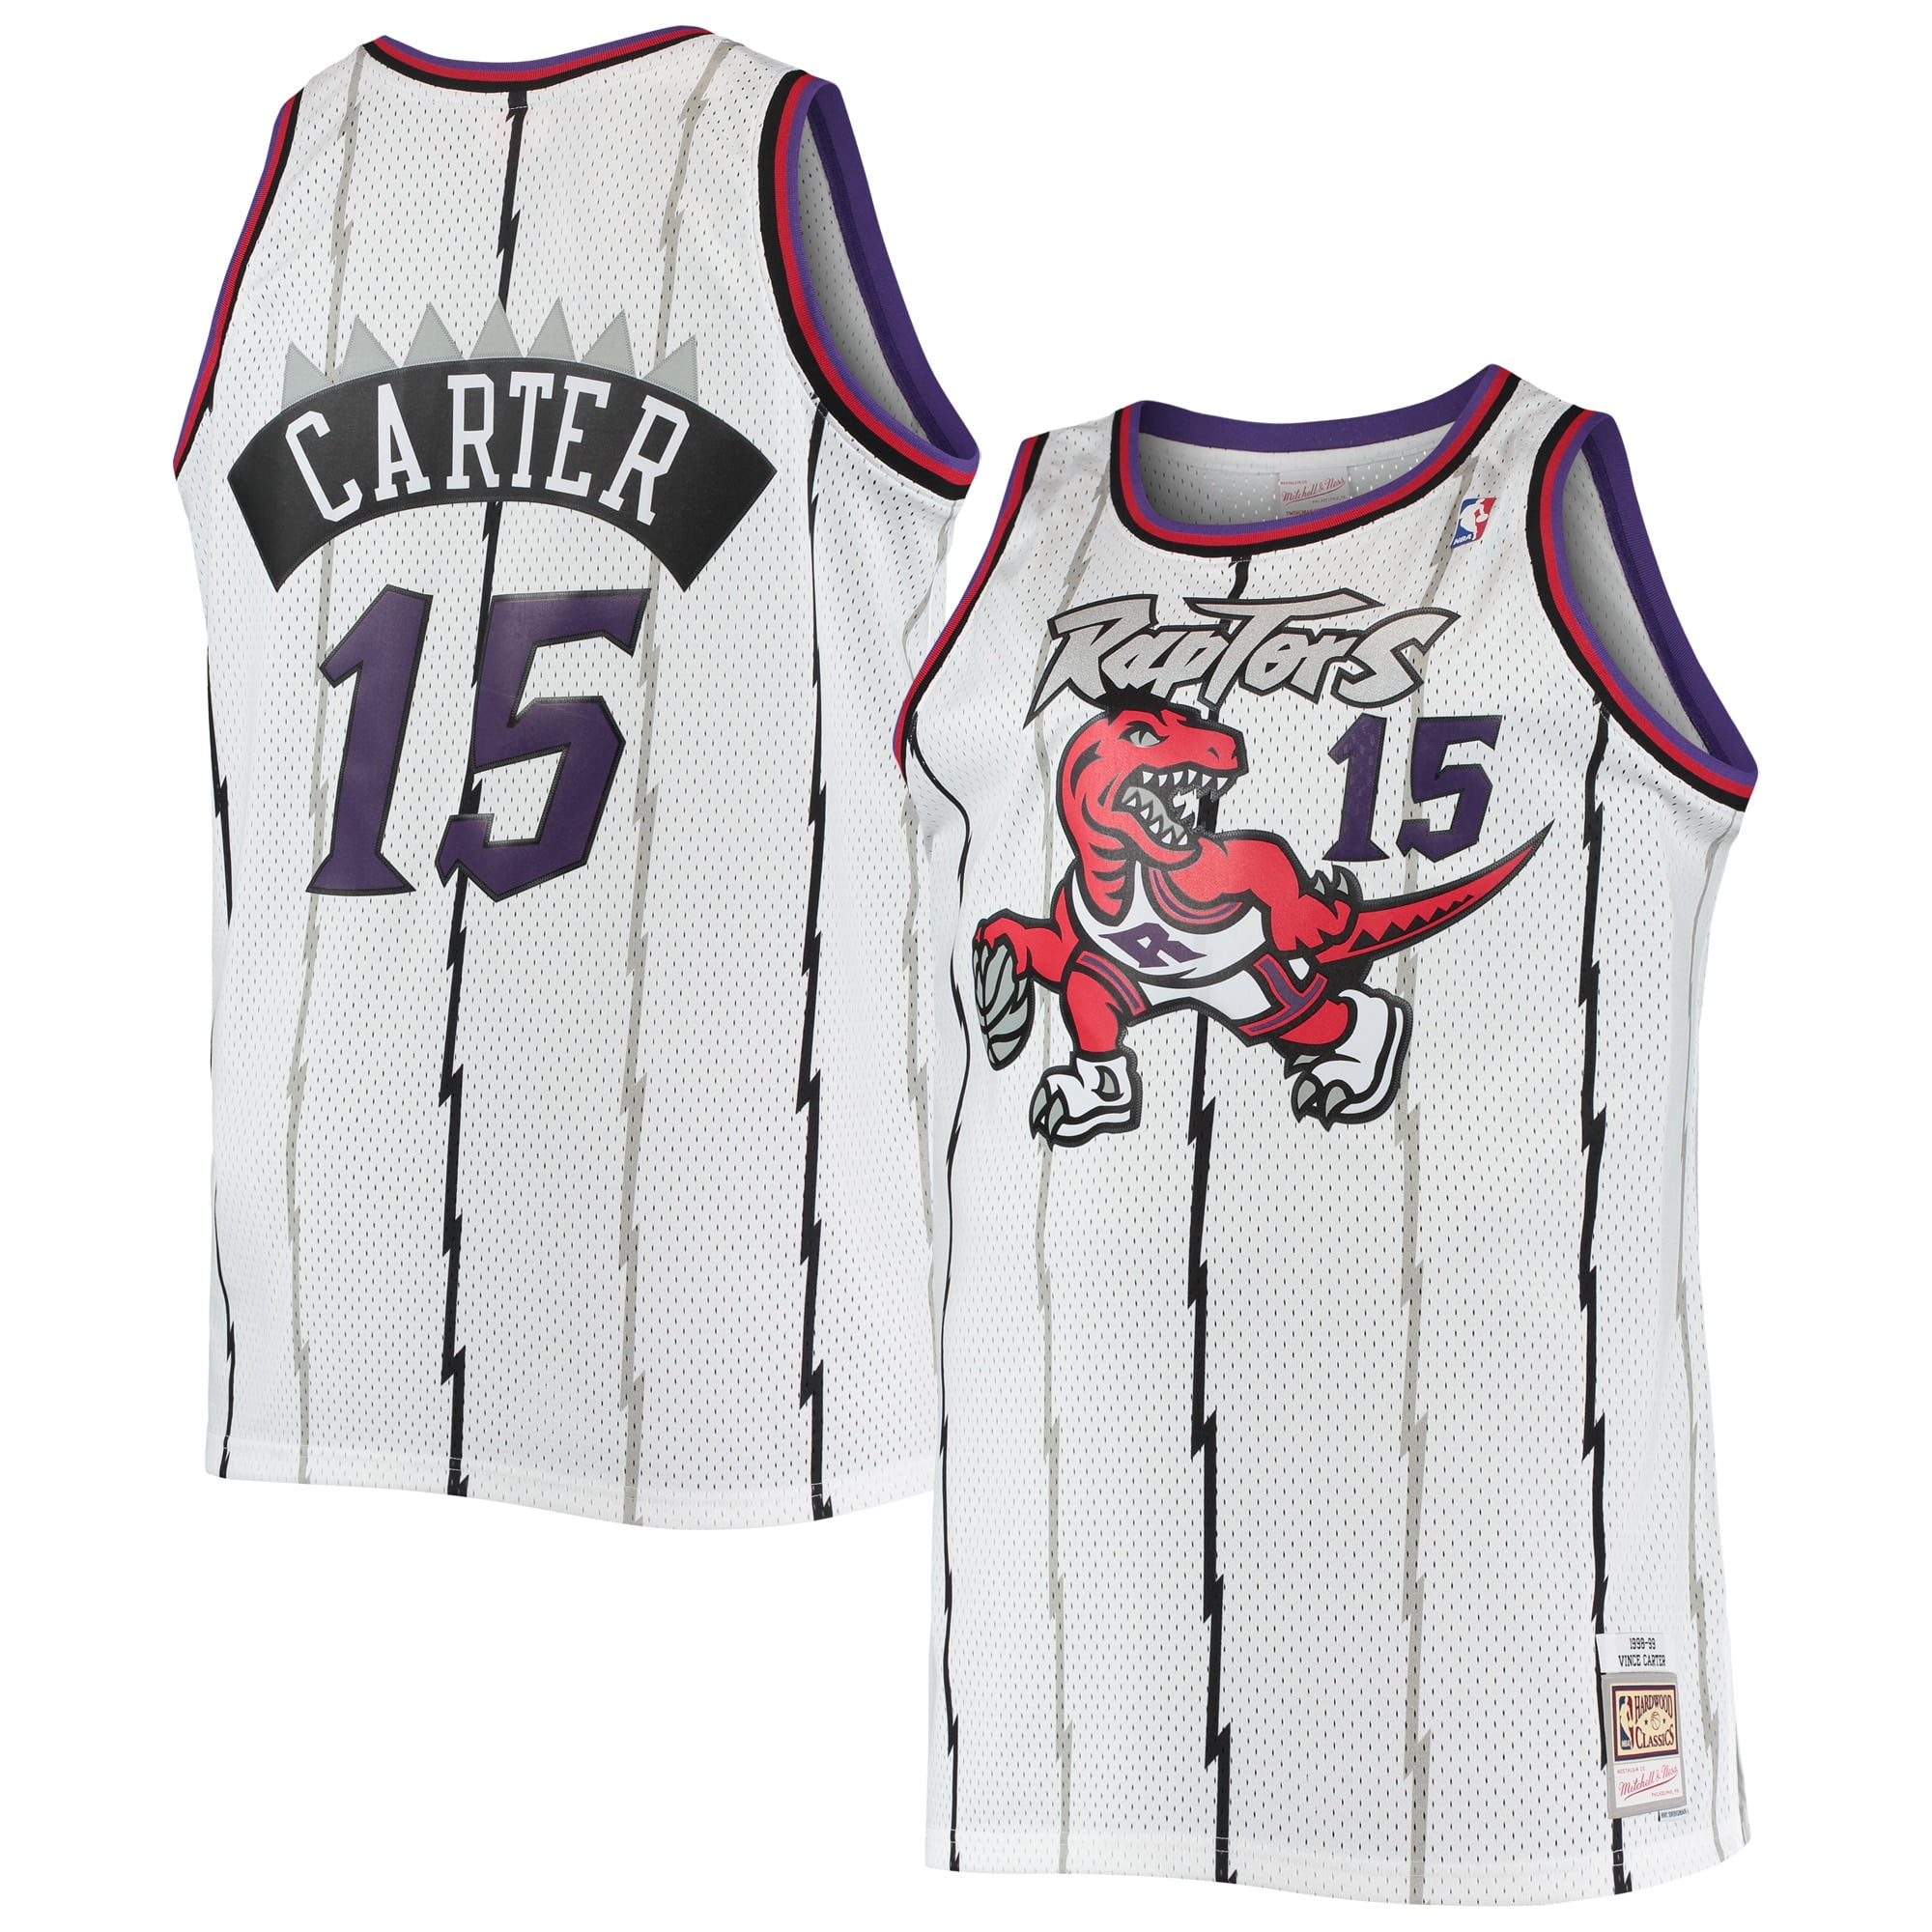 Vince Carter Toronto Raptors 1999-00 Men's Swingman Jersey (5X-Large)